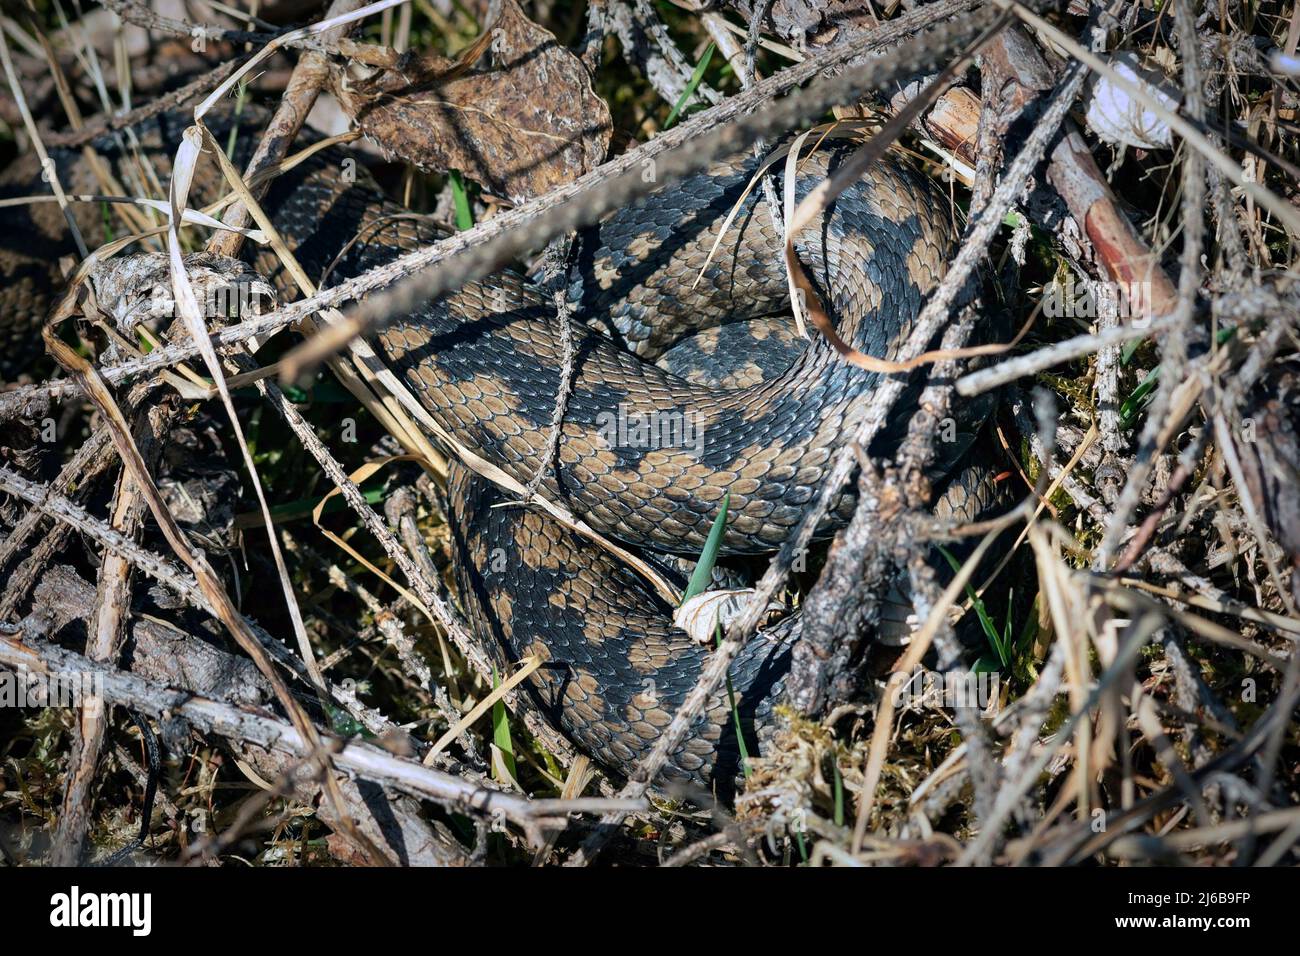 Getarnte giftige europäische Schlange, Vipera berus in natürlichem Lebensraum Stockfoto